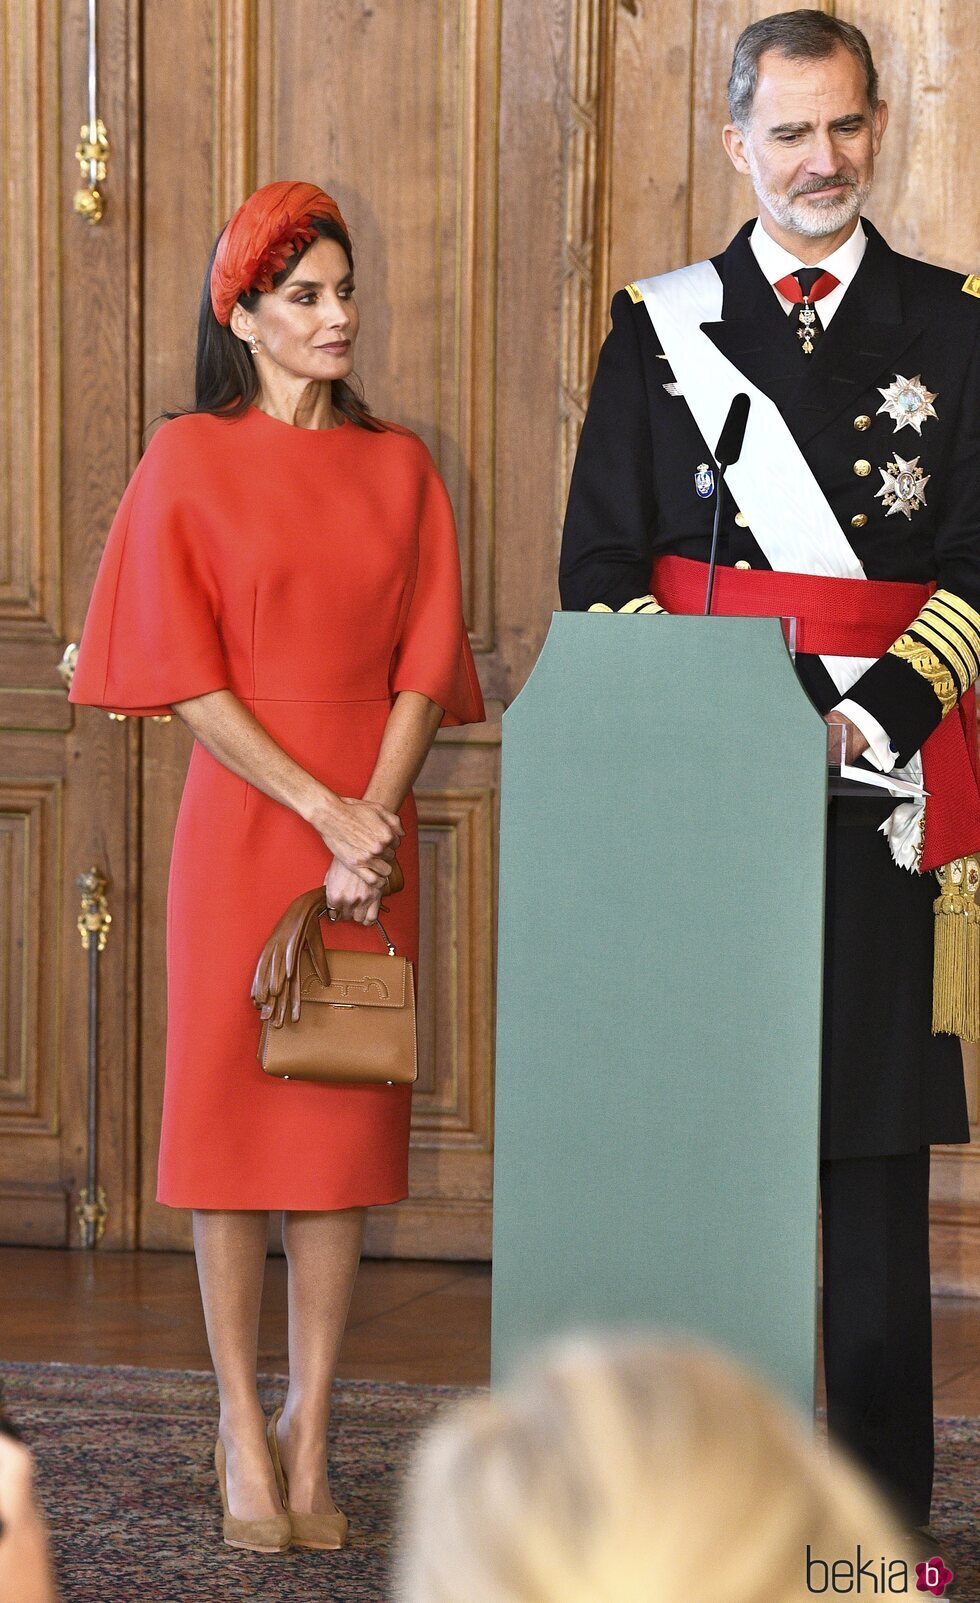 Los Reyes Felipe y Letizia tras las palabras del Rey en la Visita de Estado de los Reyes de España a Suecia